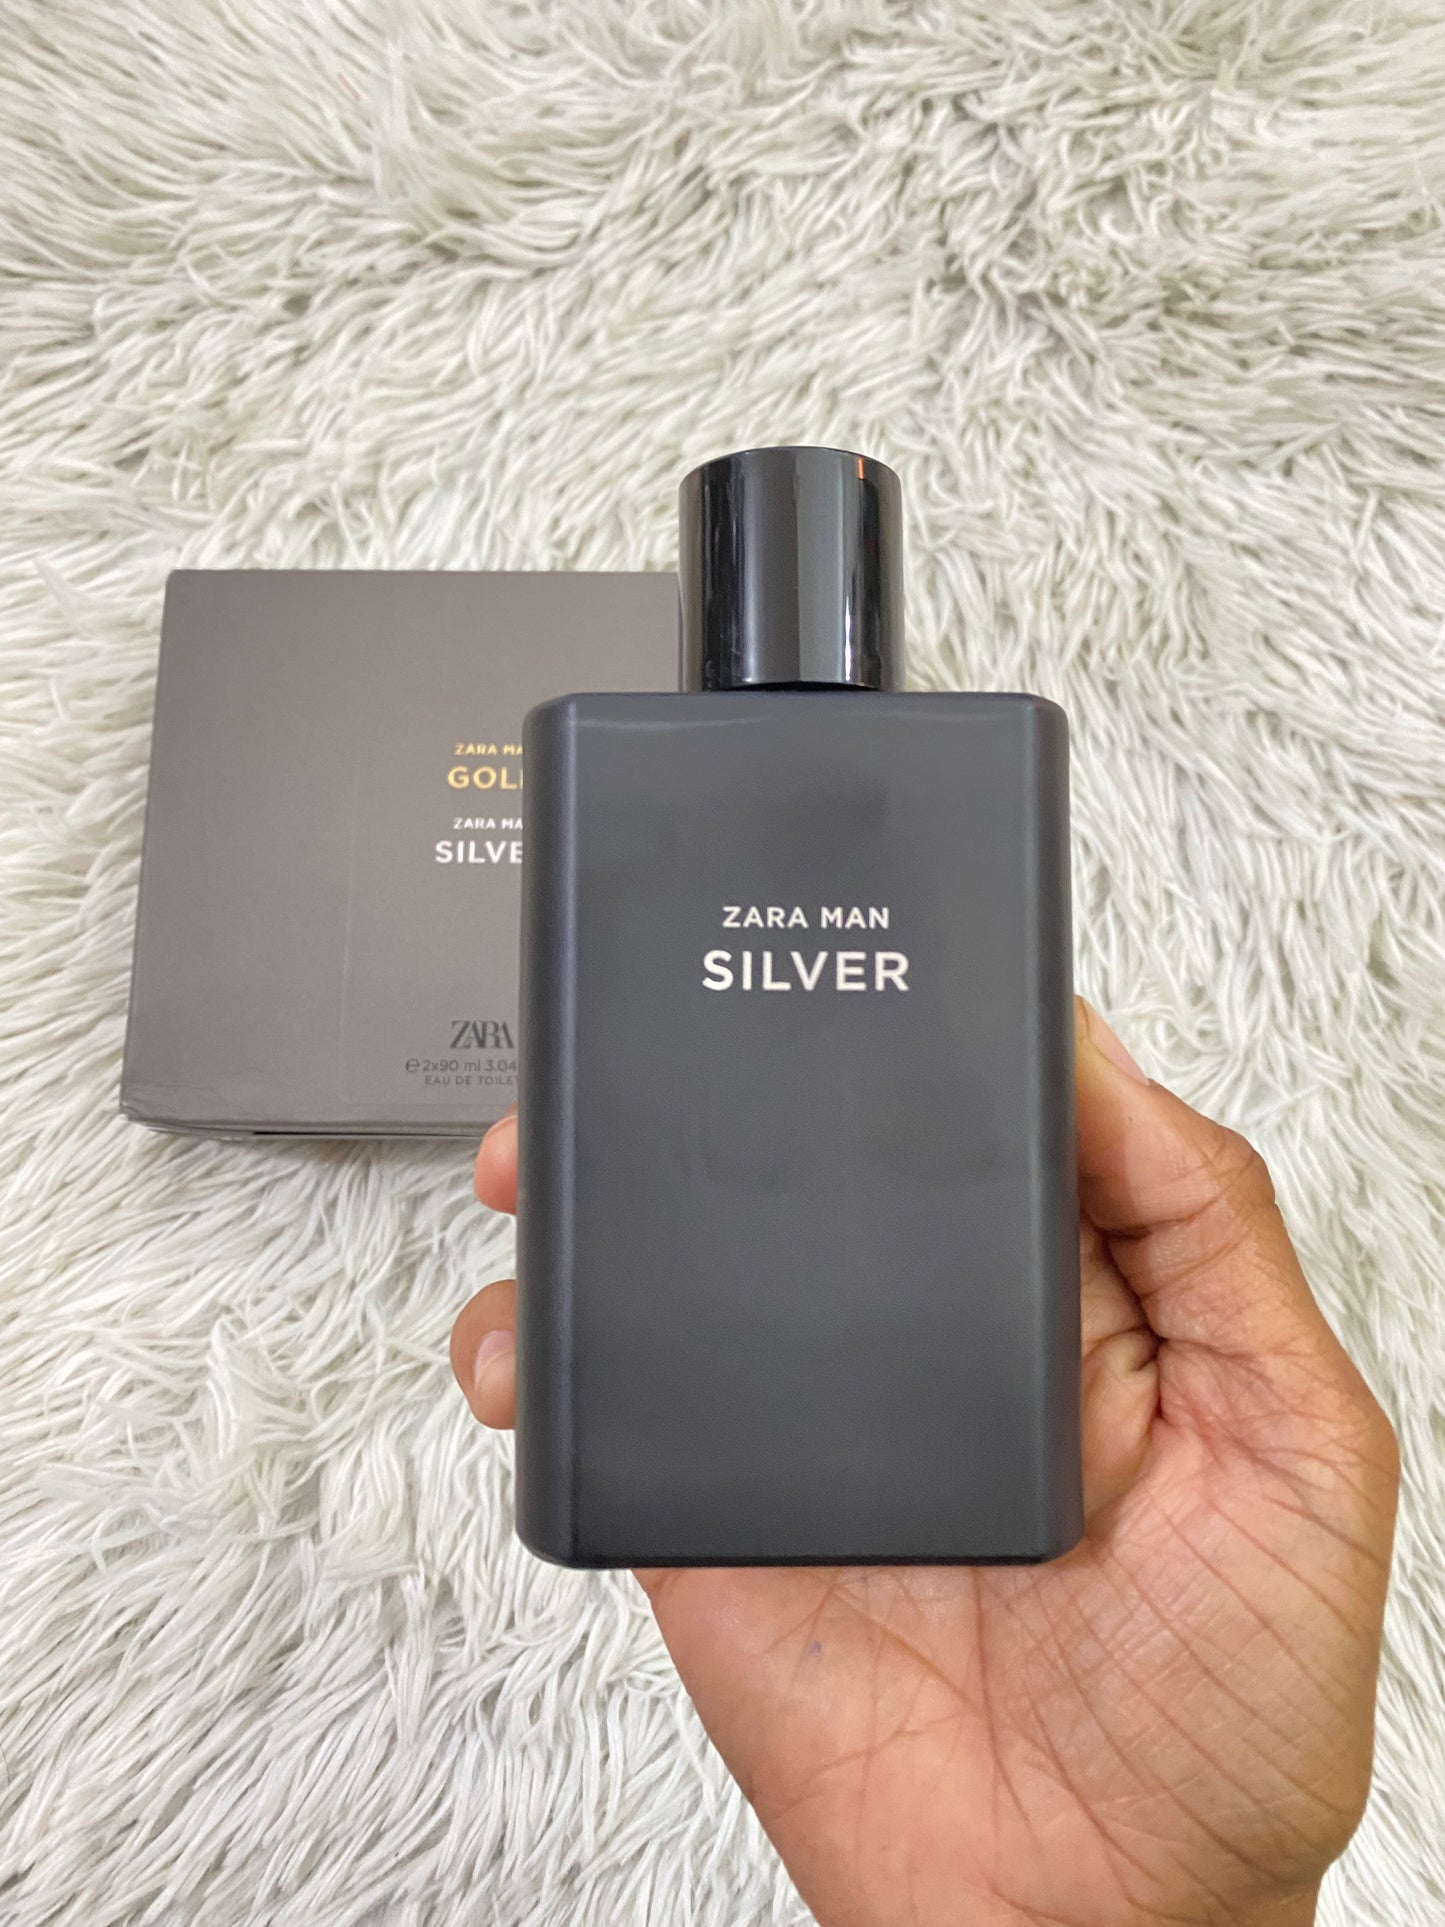 Perfume Zara original SILVER, negro con notas de limón, jazmín y madera.